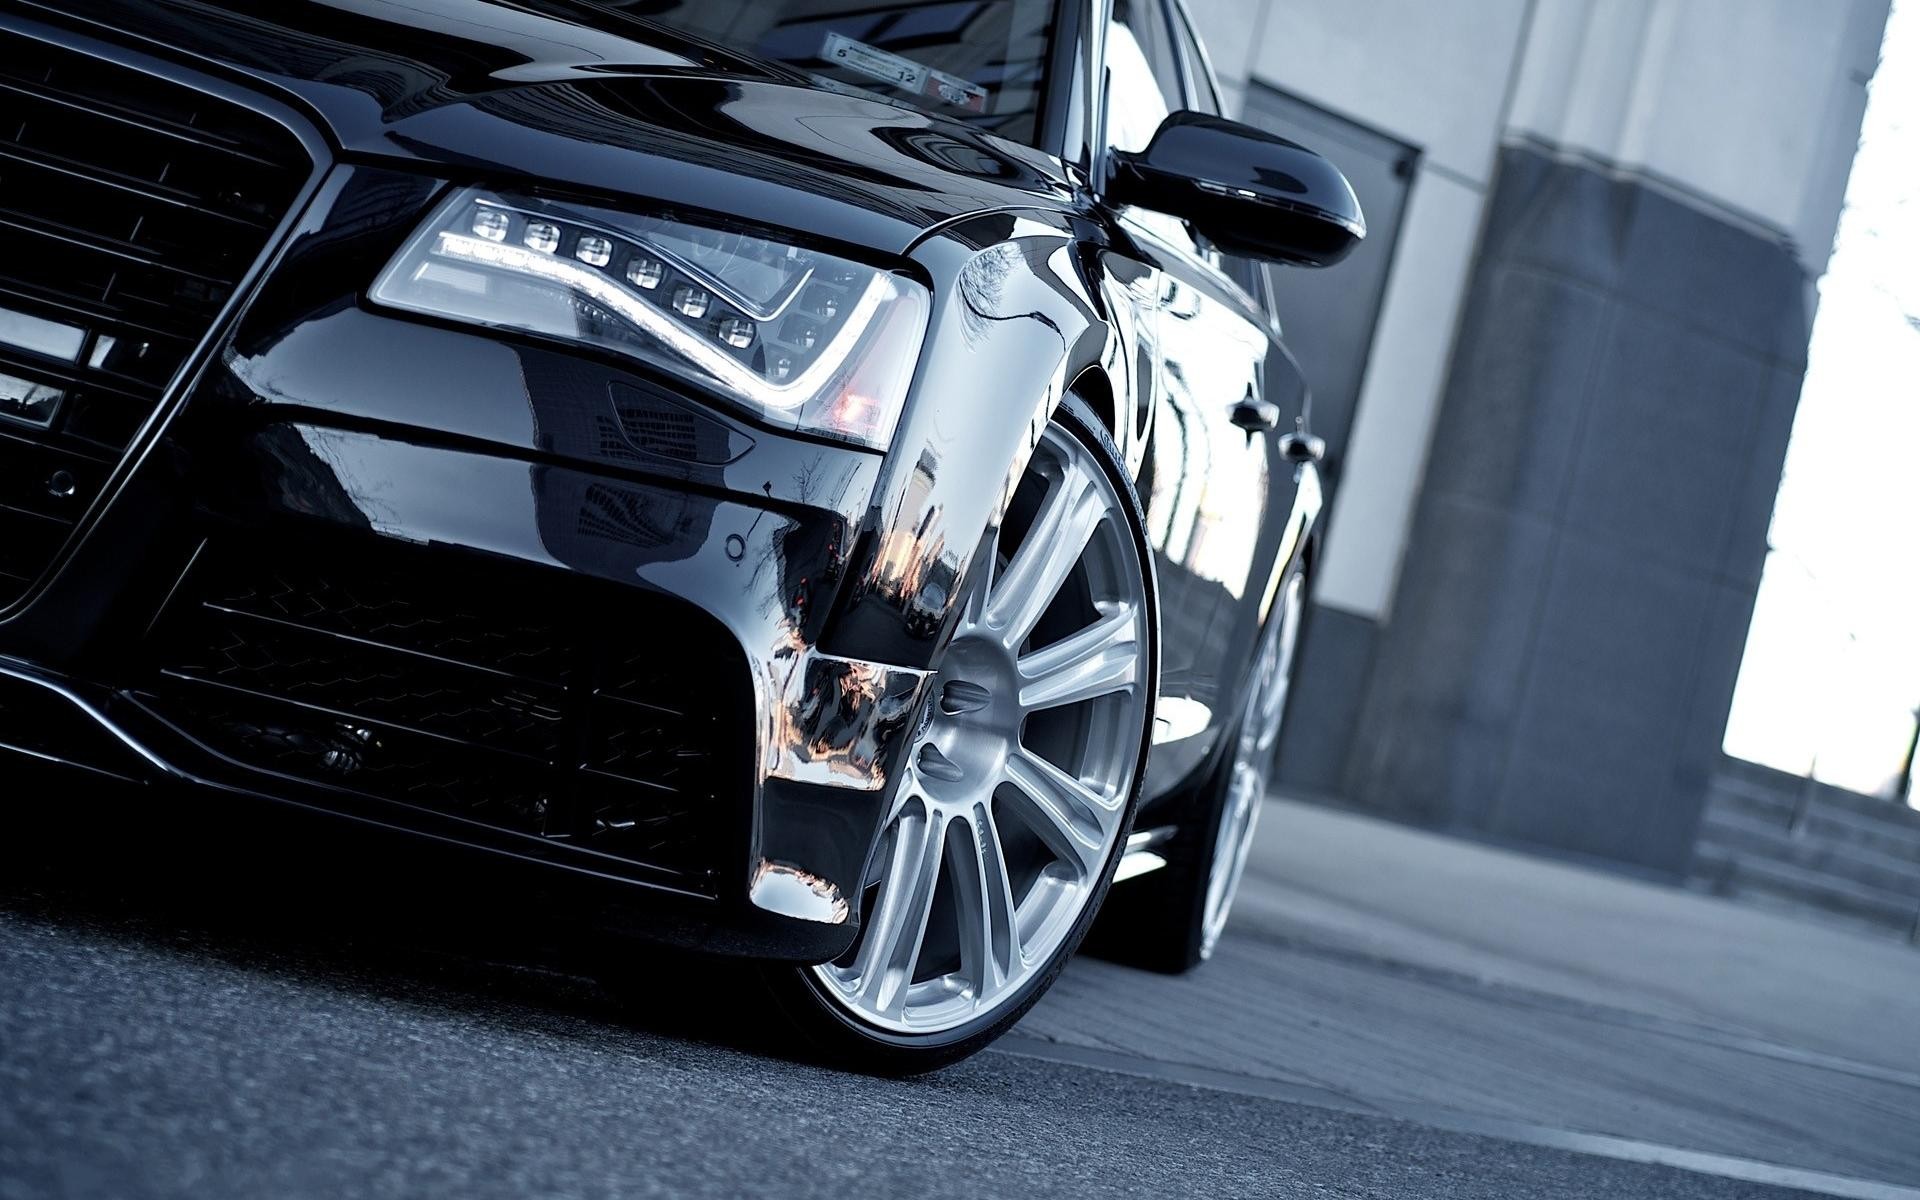 Audi Black Car Wallpapers